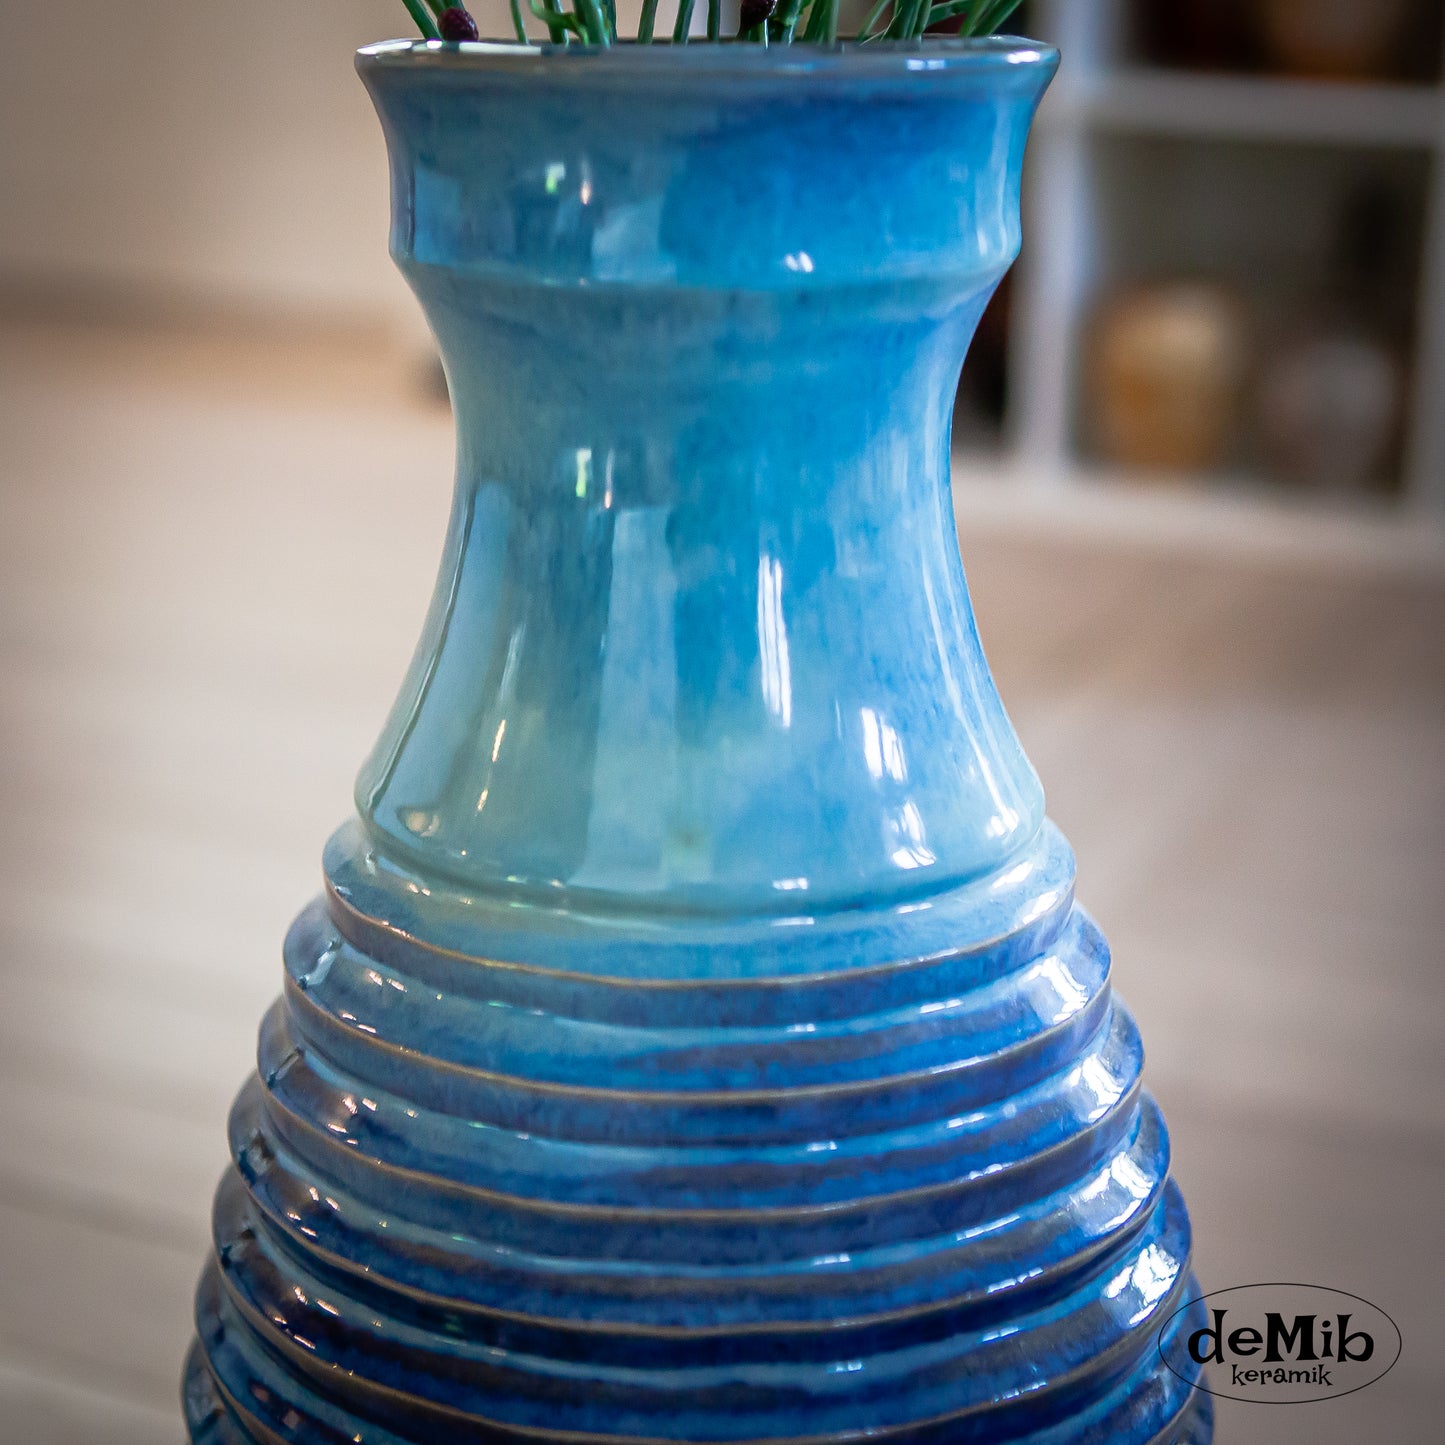 Carved Floor Vase in Floating Blue